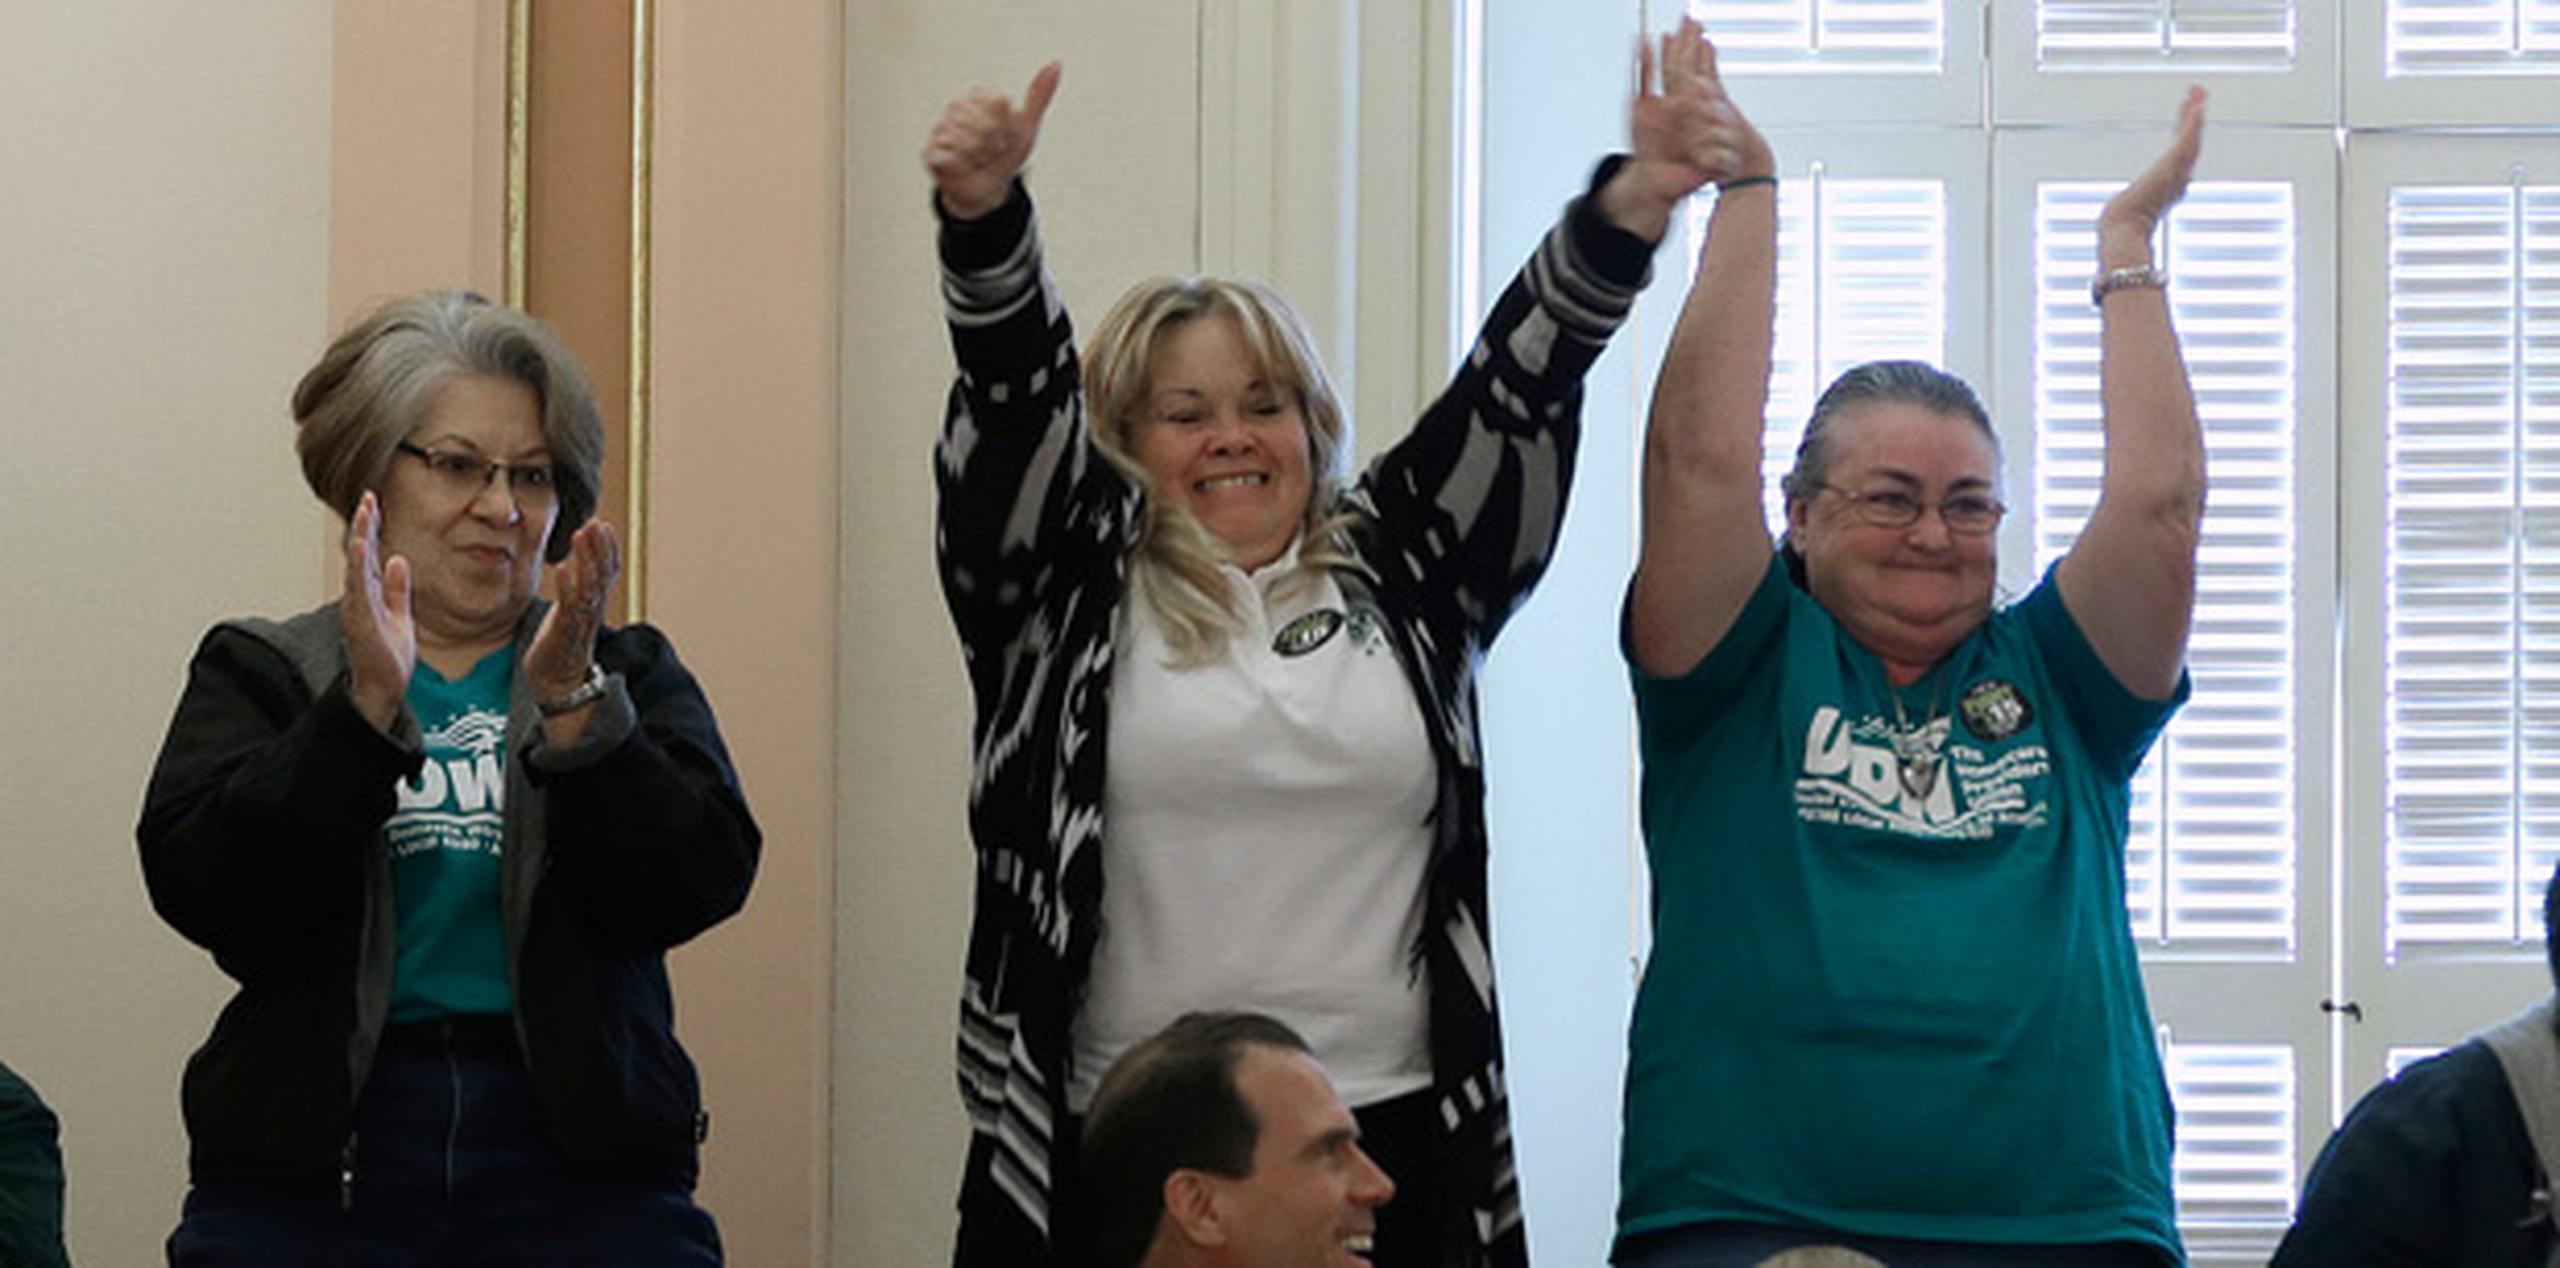 La legislatura californiana aprobó el nuevo salario el jueves. En la foto, defensores del alza celebran la decisión. (AP)